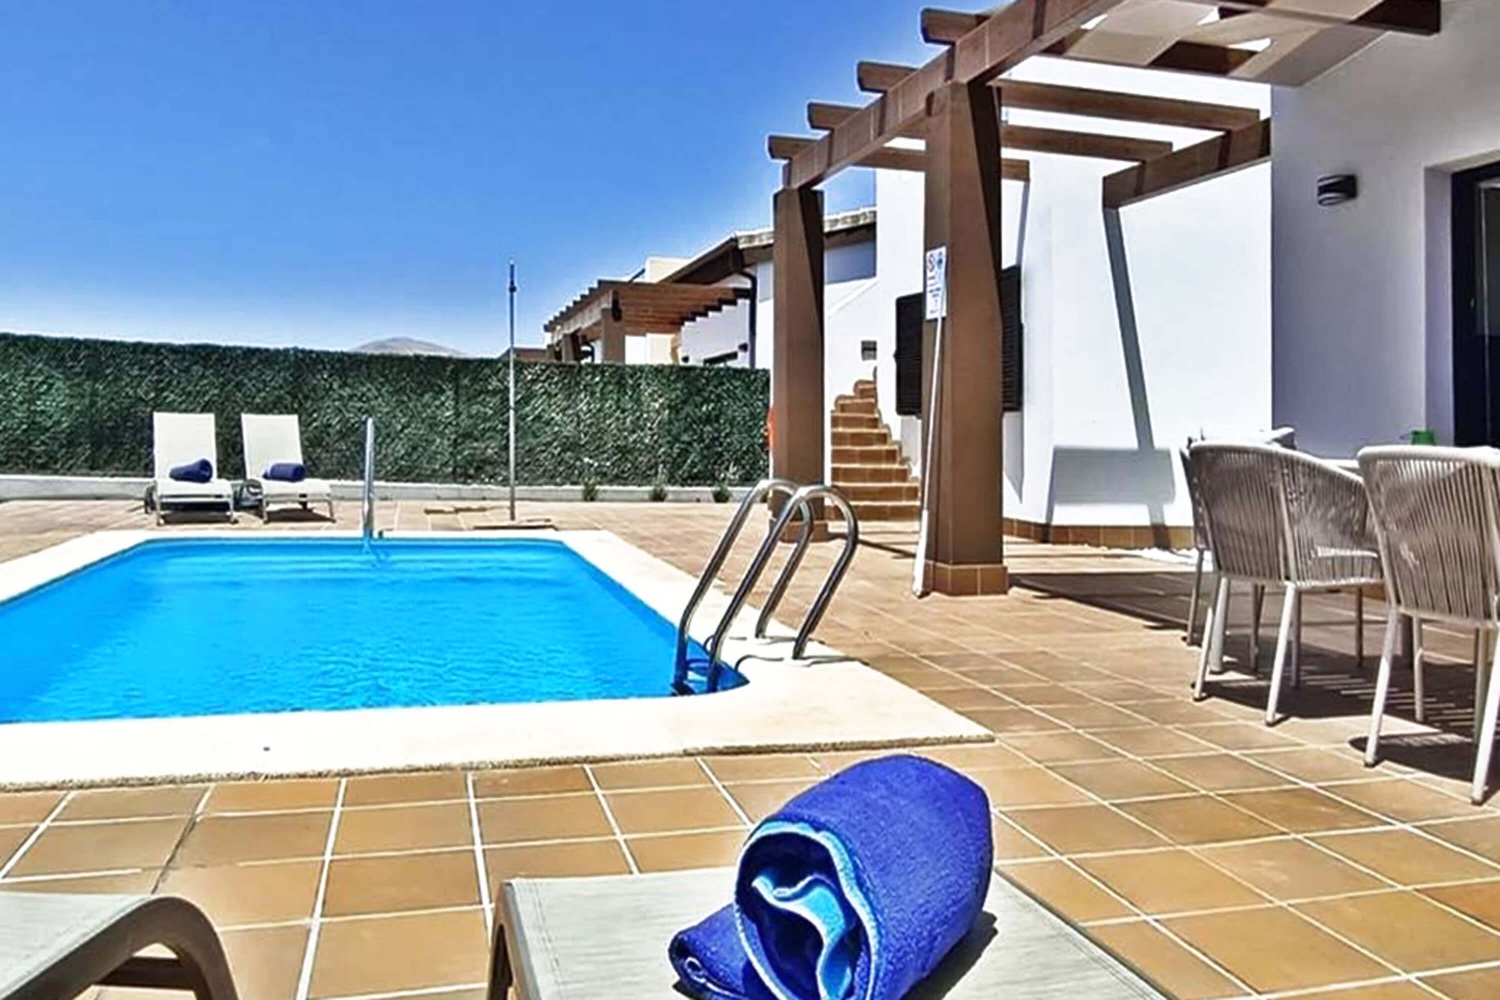 Modern en stijlvol ontworpen vakantiehuis met privézwembad gelegen in het zuiden van Fuerteventura